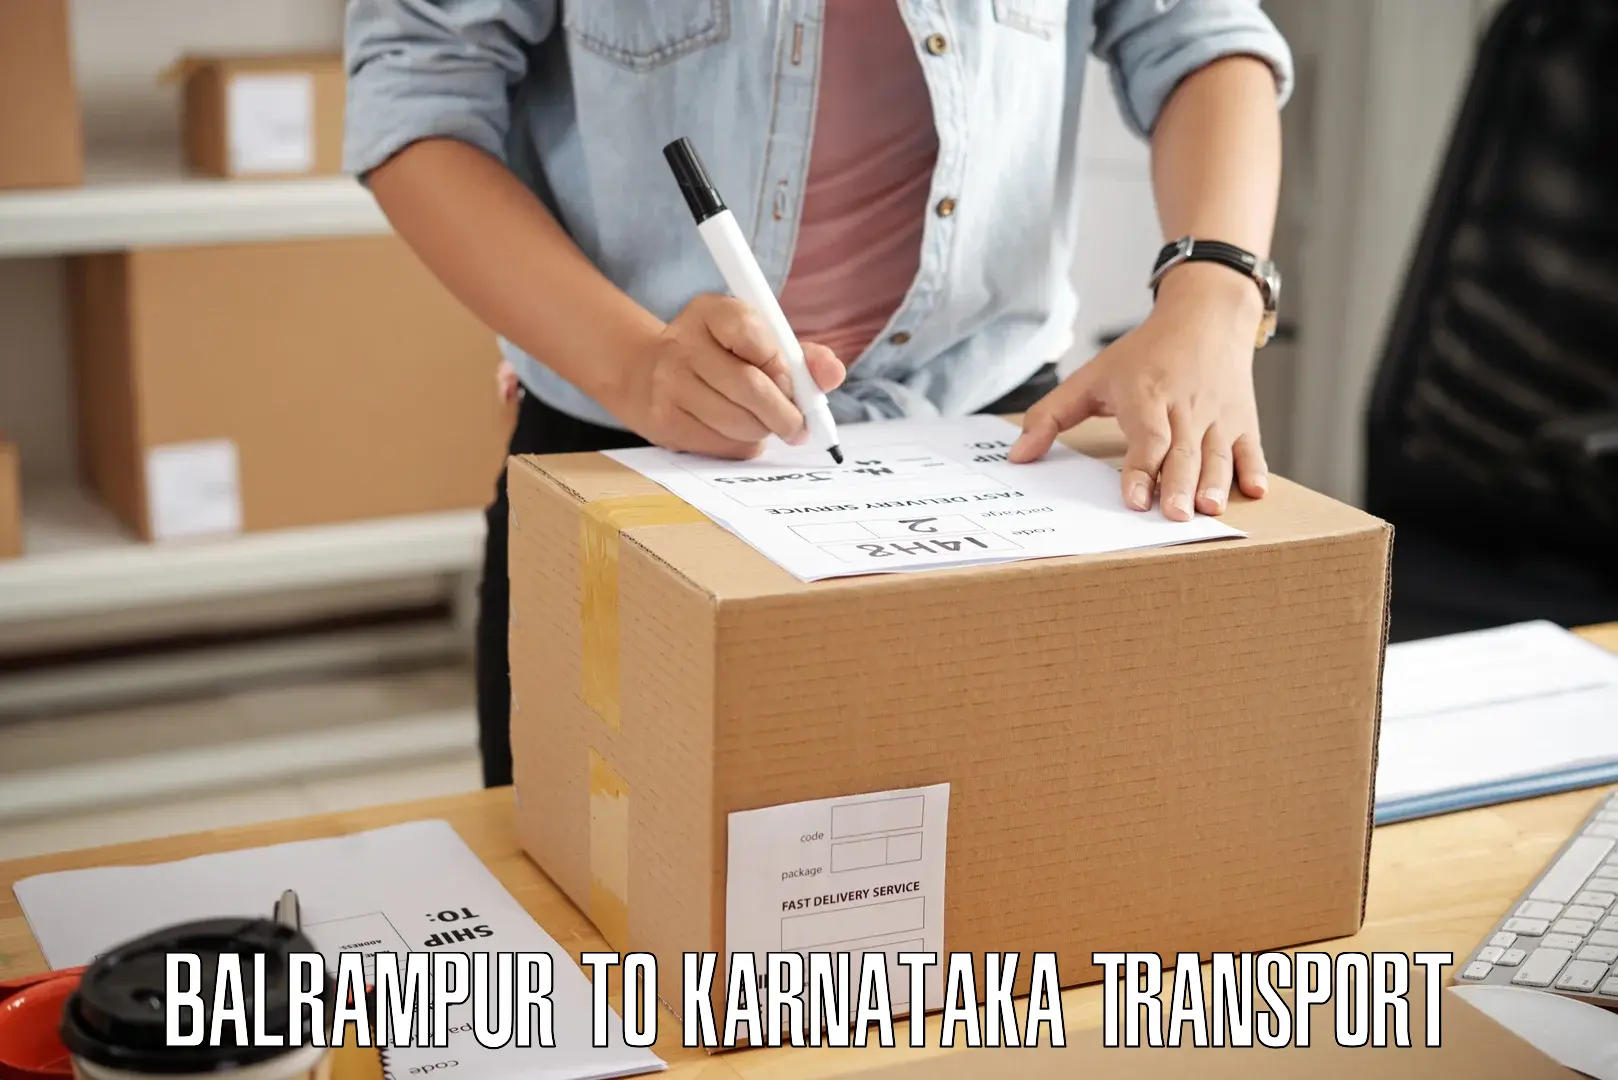 Vehicle parcel service Balrampur to Karnataka